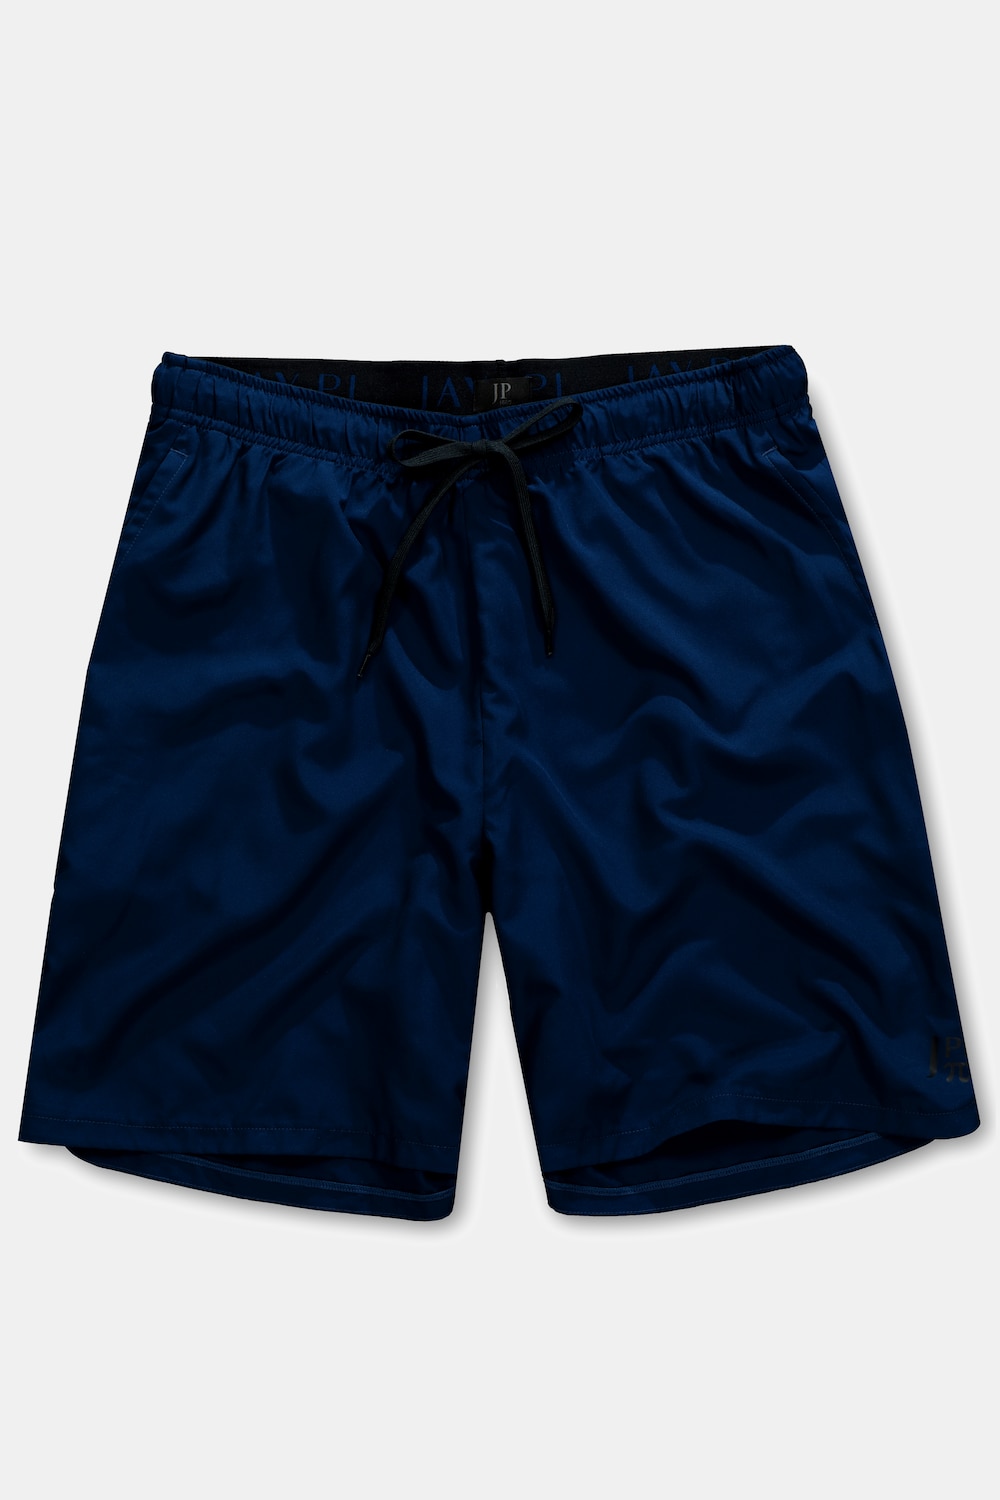 Sport-Shorts, Große Größen, Herren, blau, Größe: XL, Polyester, JP1880